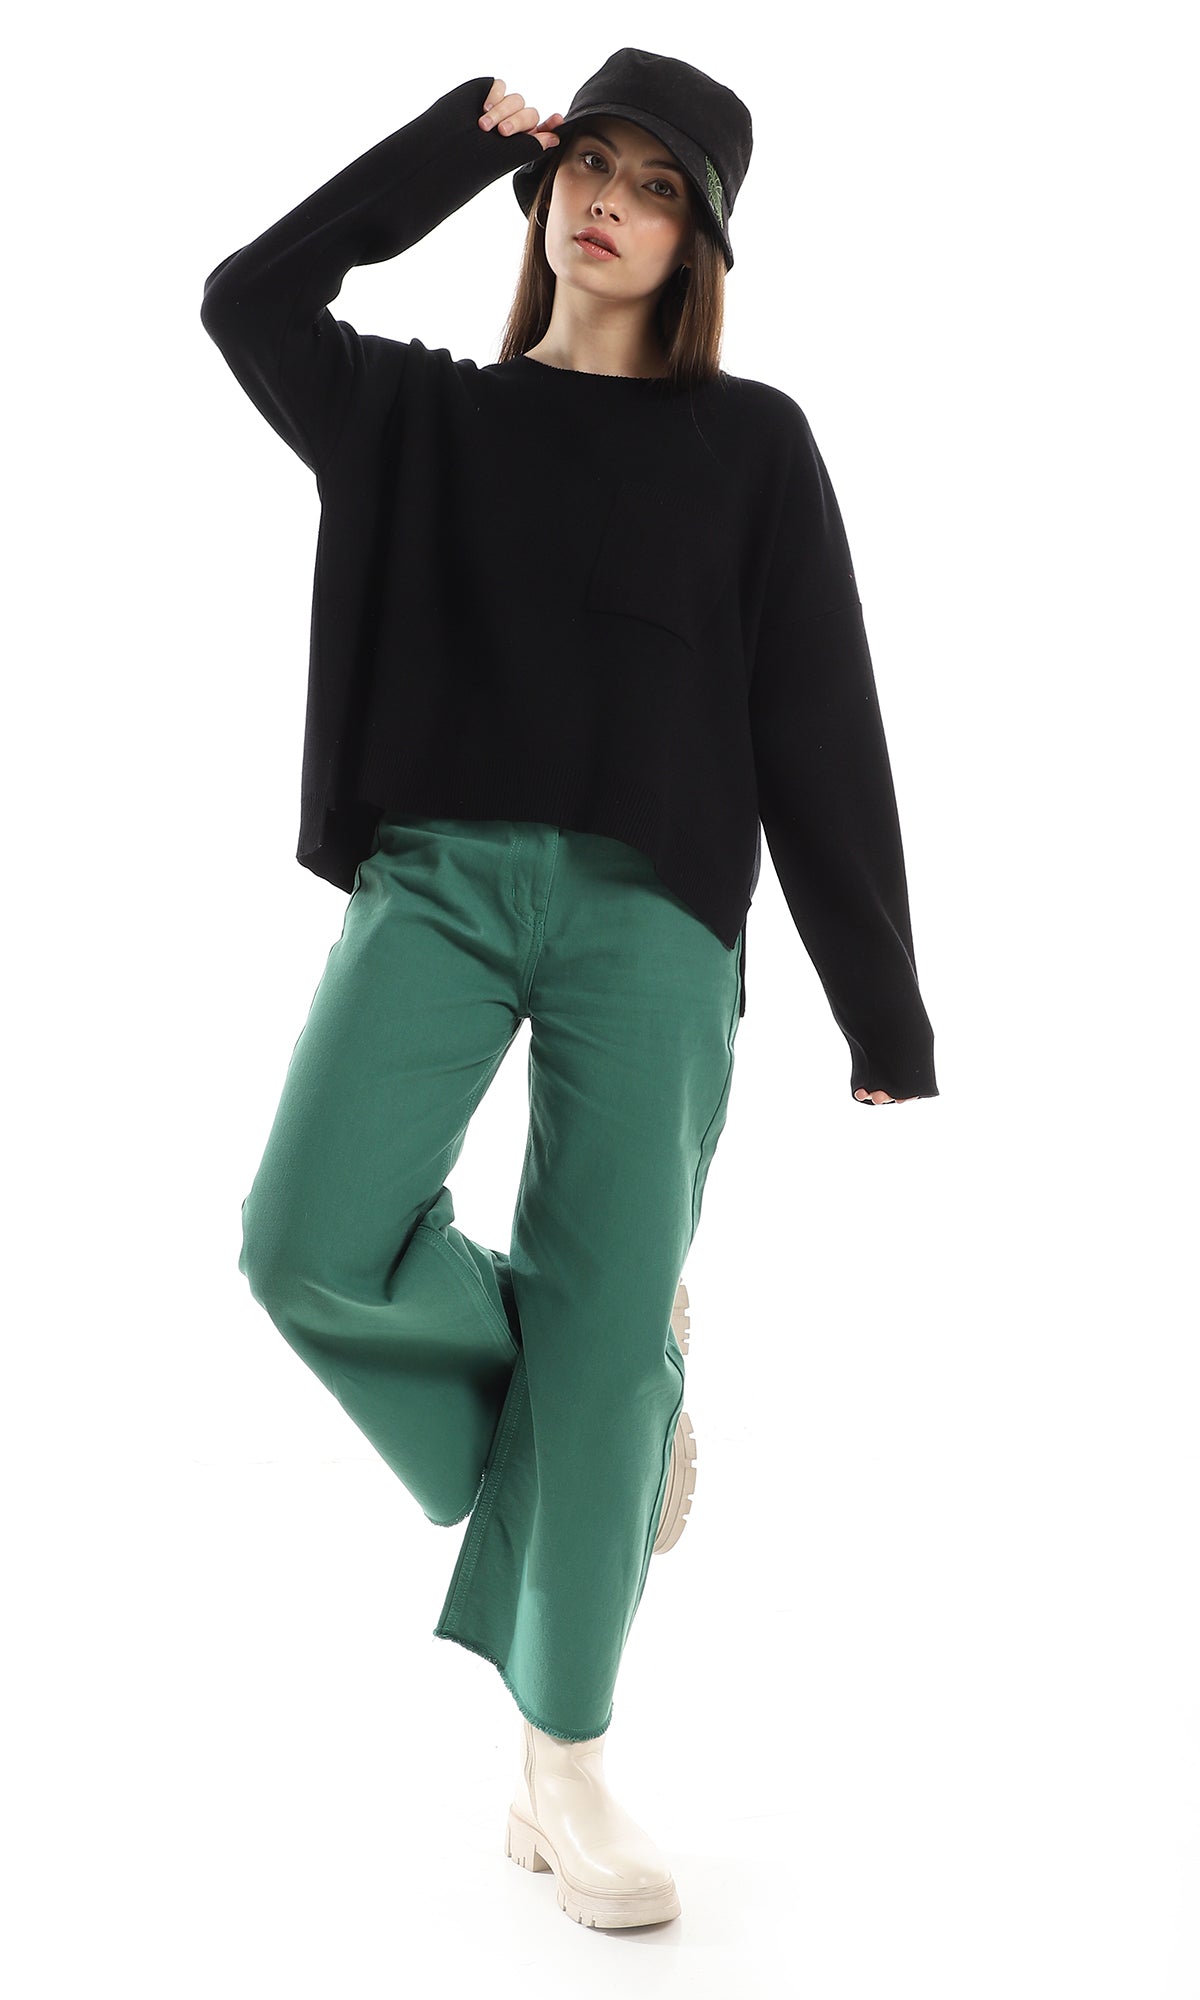 O162568 Side Slits Basic Black Pullover With Side Pocket